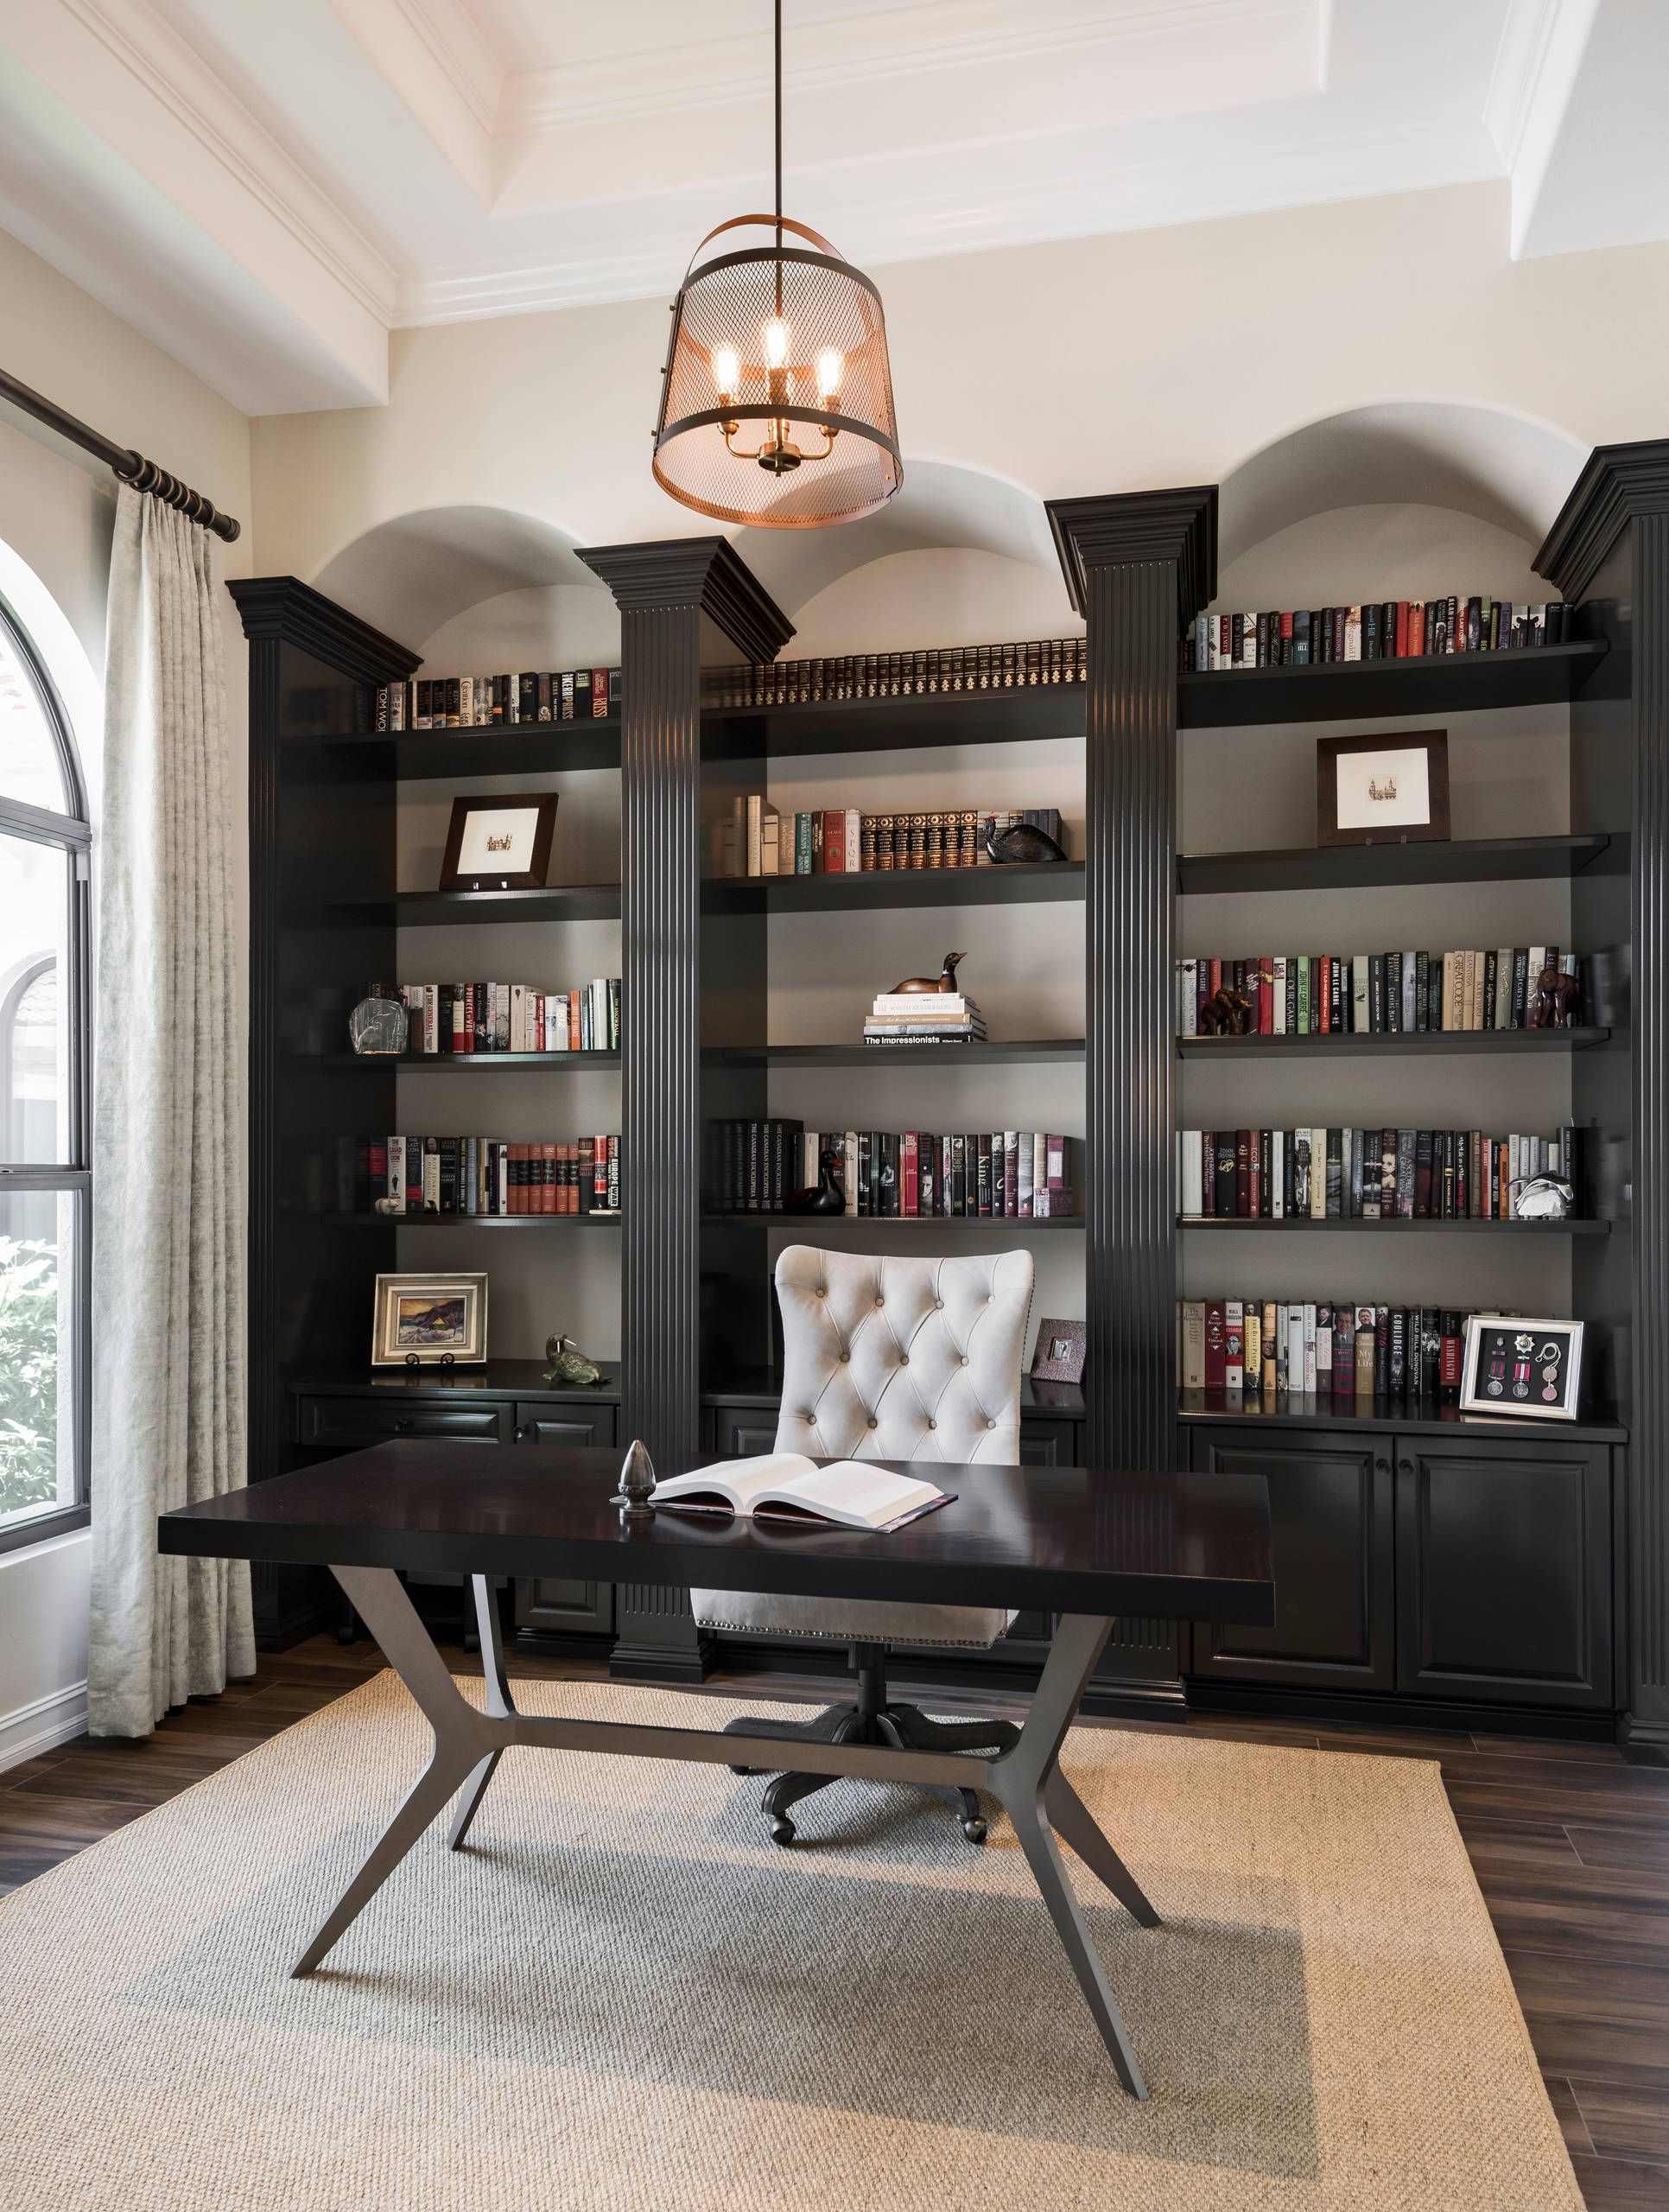 3-Shelf Bookcase Home Office Library Decor Display Storage Organizer Dark Brown 